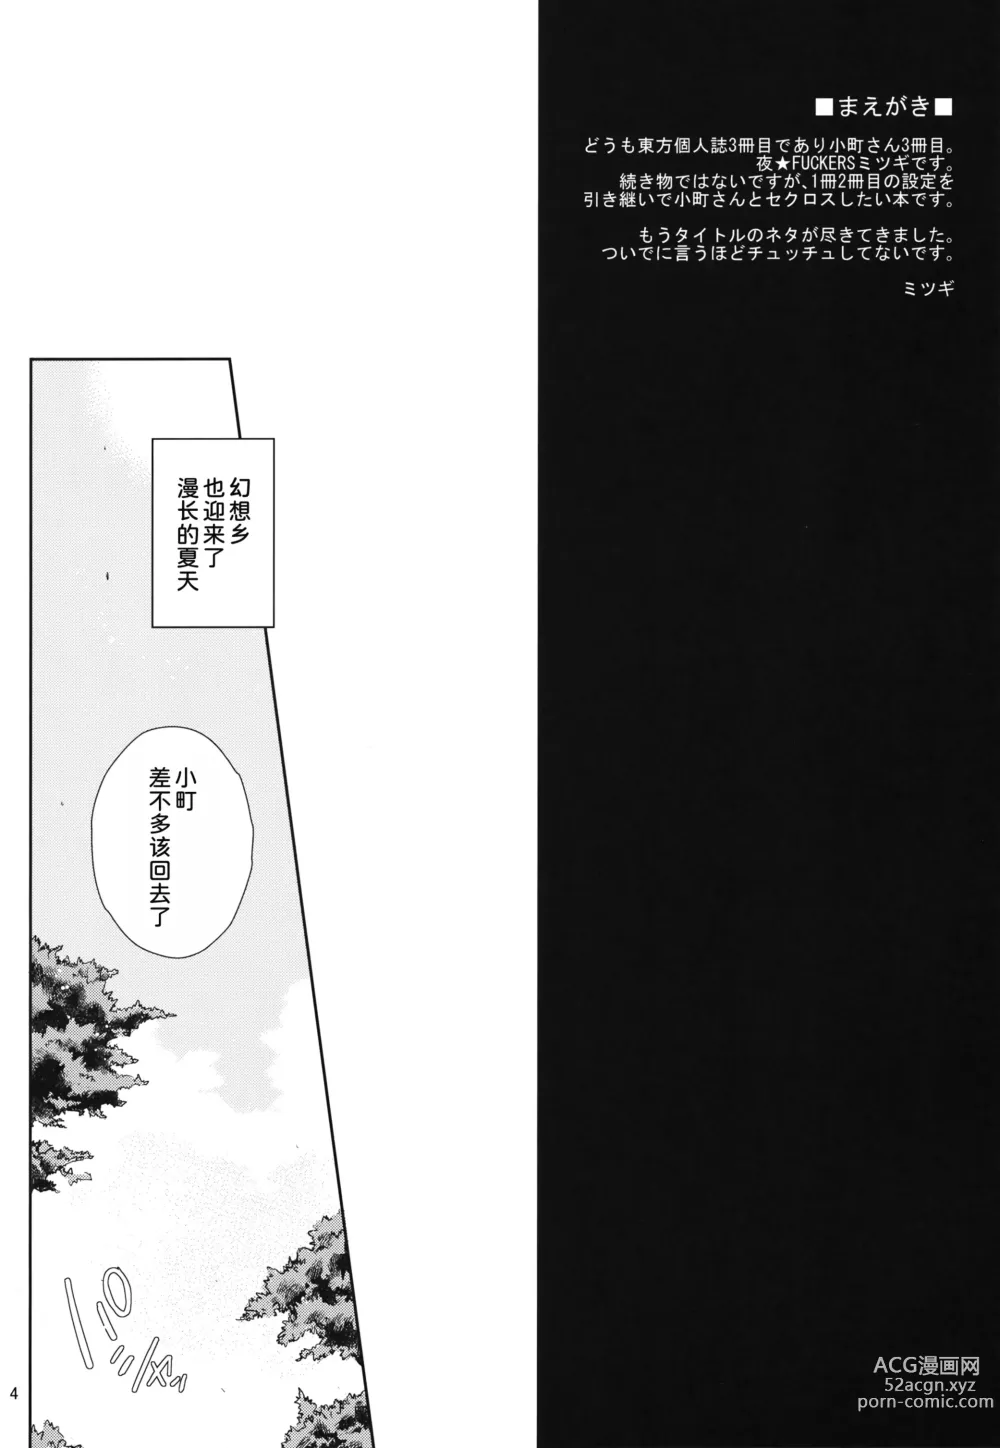 Page 5 of doujinshi Komachi-san no Eroi Tokoro ni Yagai de Chucchu Suru Hanashi